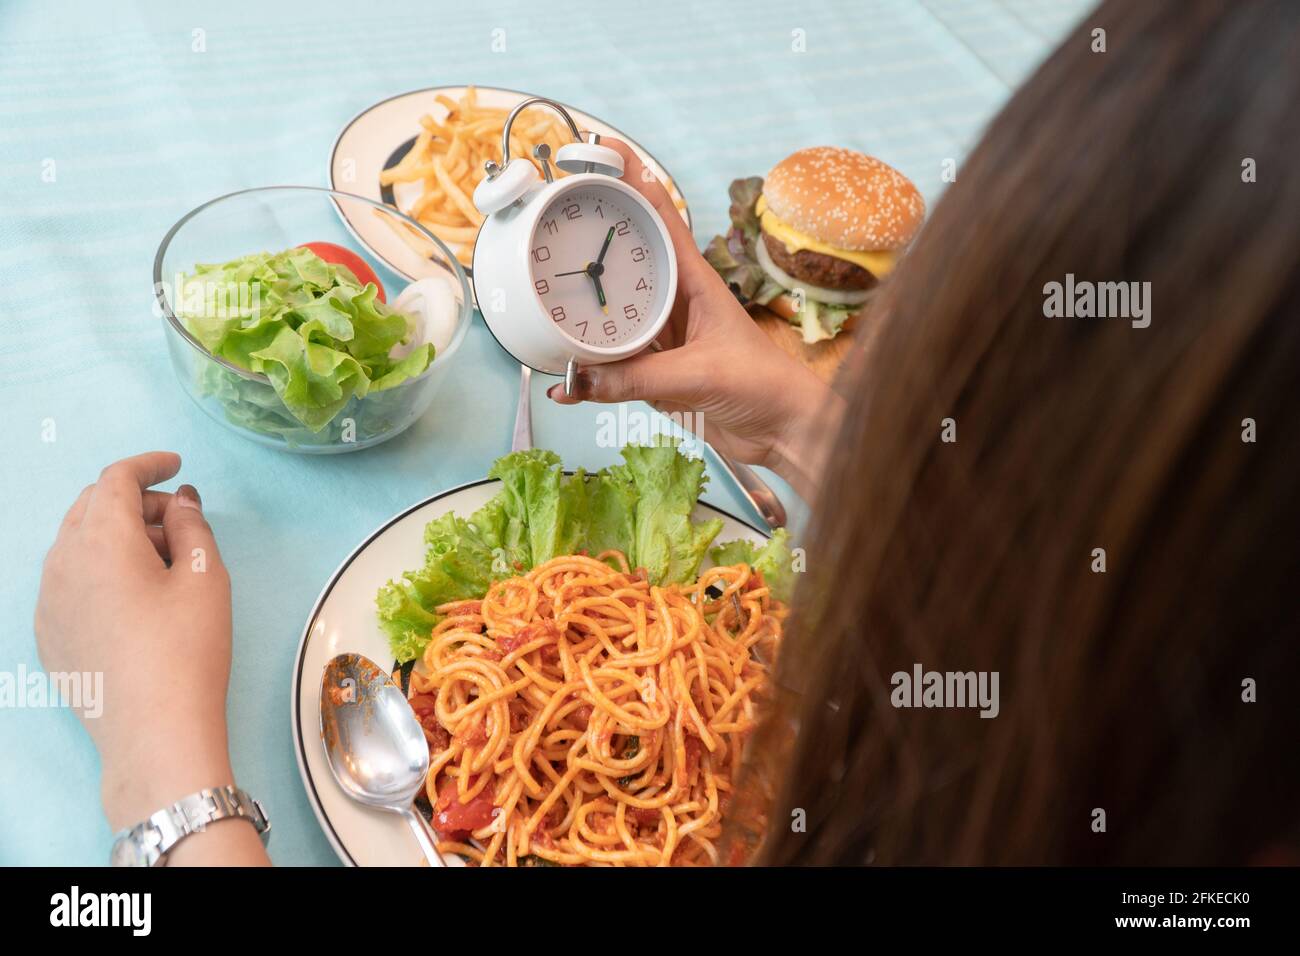 Die junge Frau hält die Uhr und ist bereit, einen Hamburger, Pommes Frites  und Spaghetti zum Frühstück zu essen. Konzept der Binge Eating Störung  (BETT) und entspannen Stockfotografie - Alamy